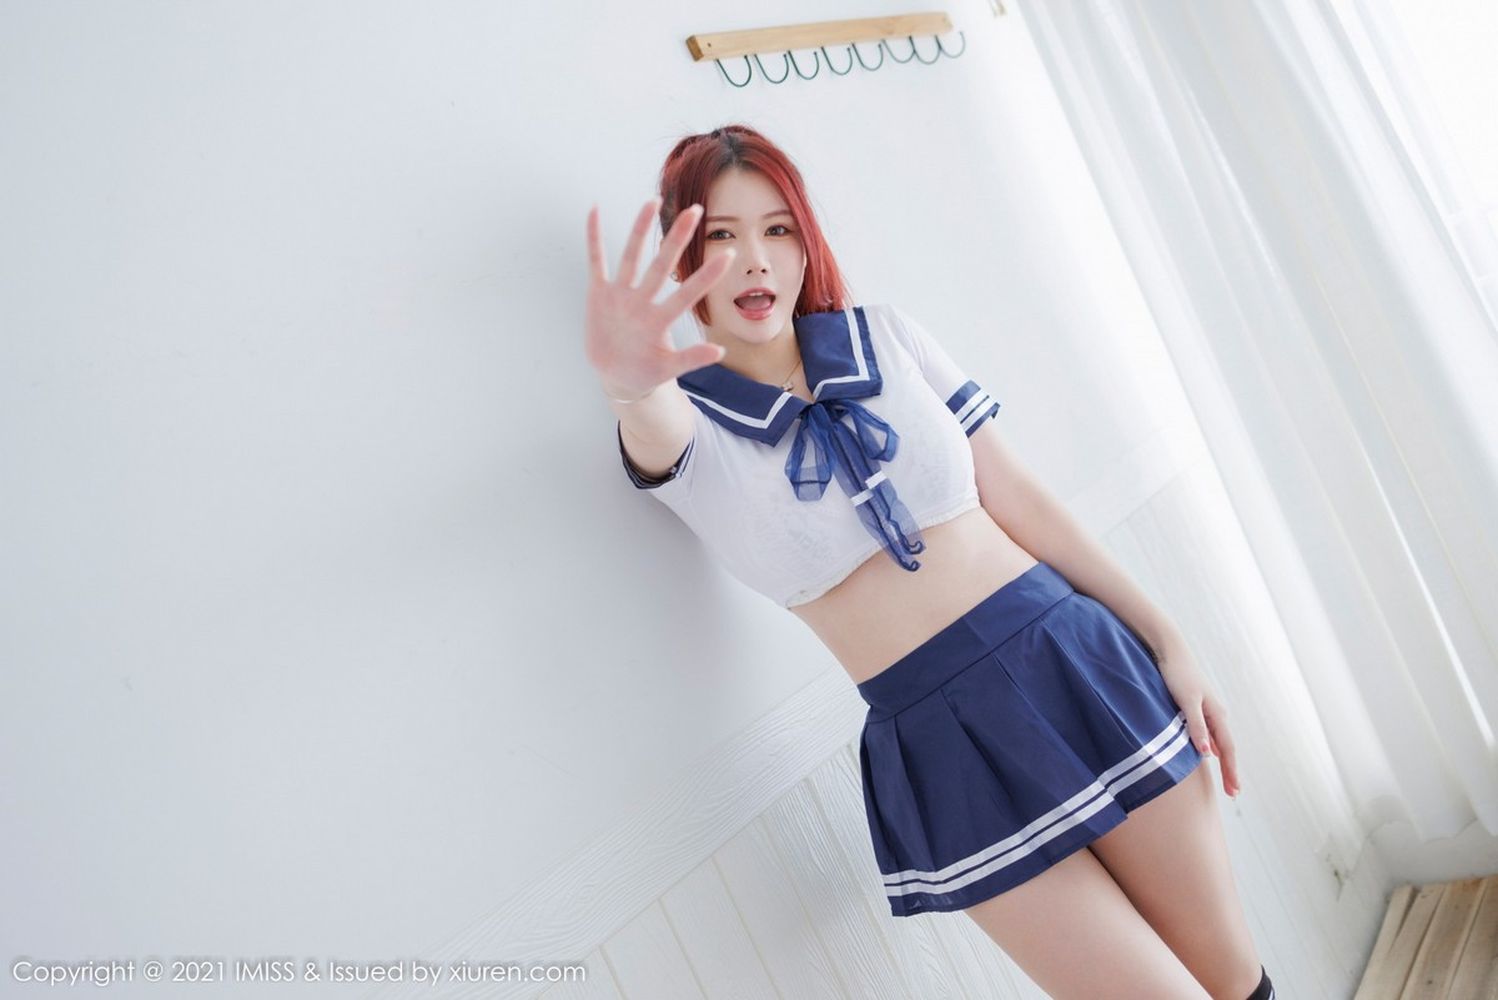 美女模特Evon陈赞之短款白T搭配蓝色超短裙性感写真